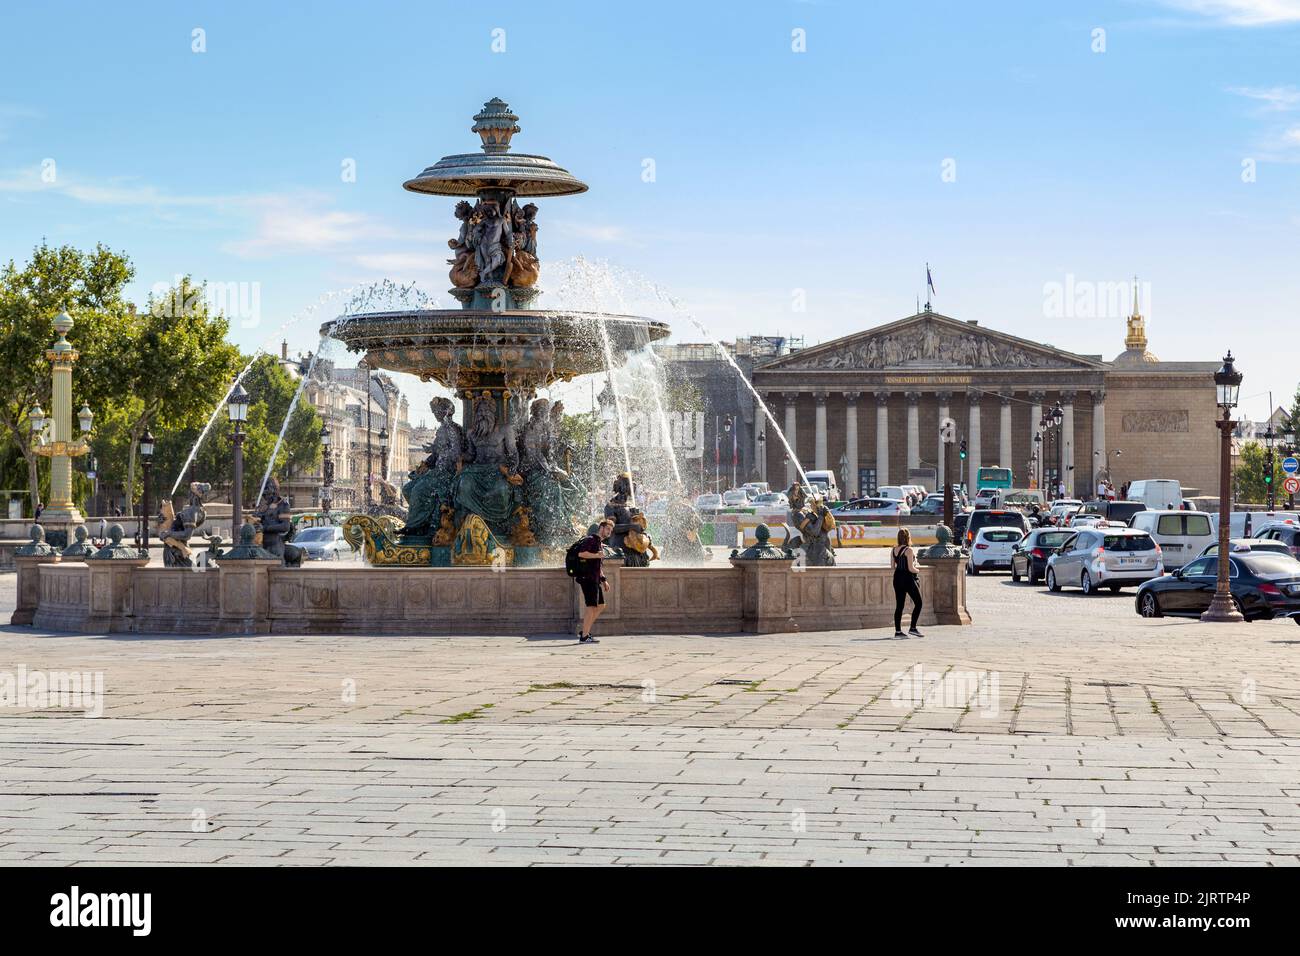 PARIS, FRANCE - 31 AOÛT 2019 : la fontaine des mers est l'une des deux fontaines de la place de la Concorde, qui symbolise l'esprit maritime de Banque D'Images